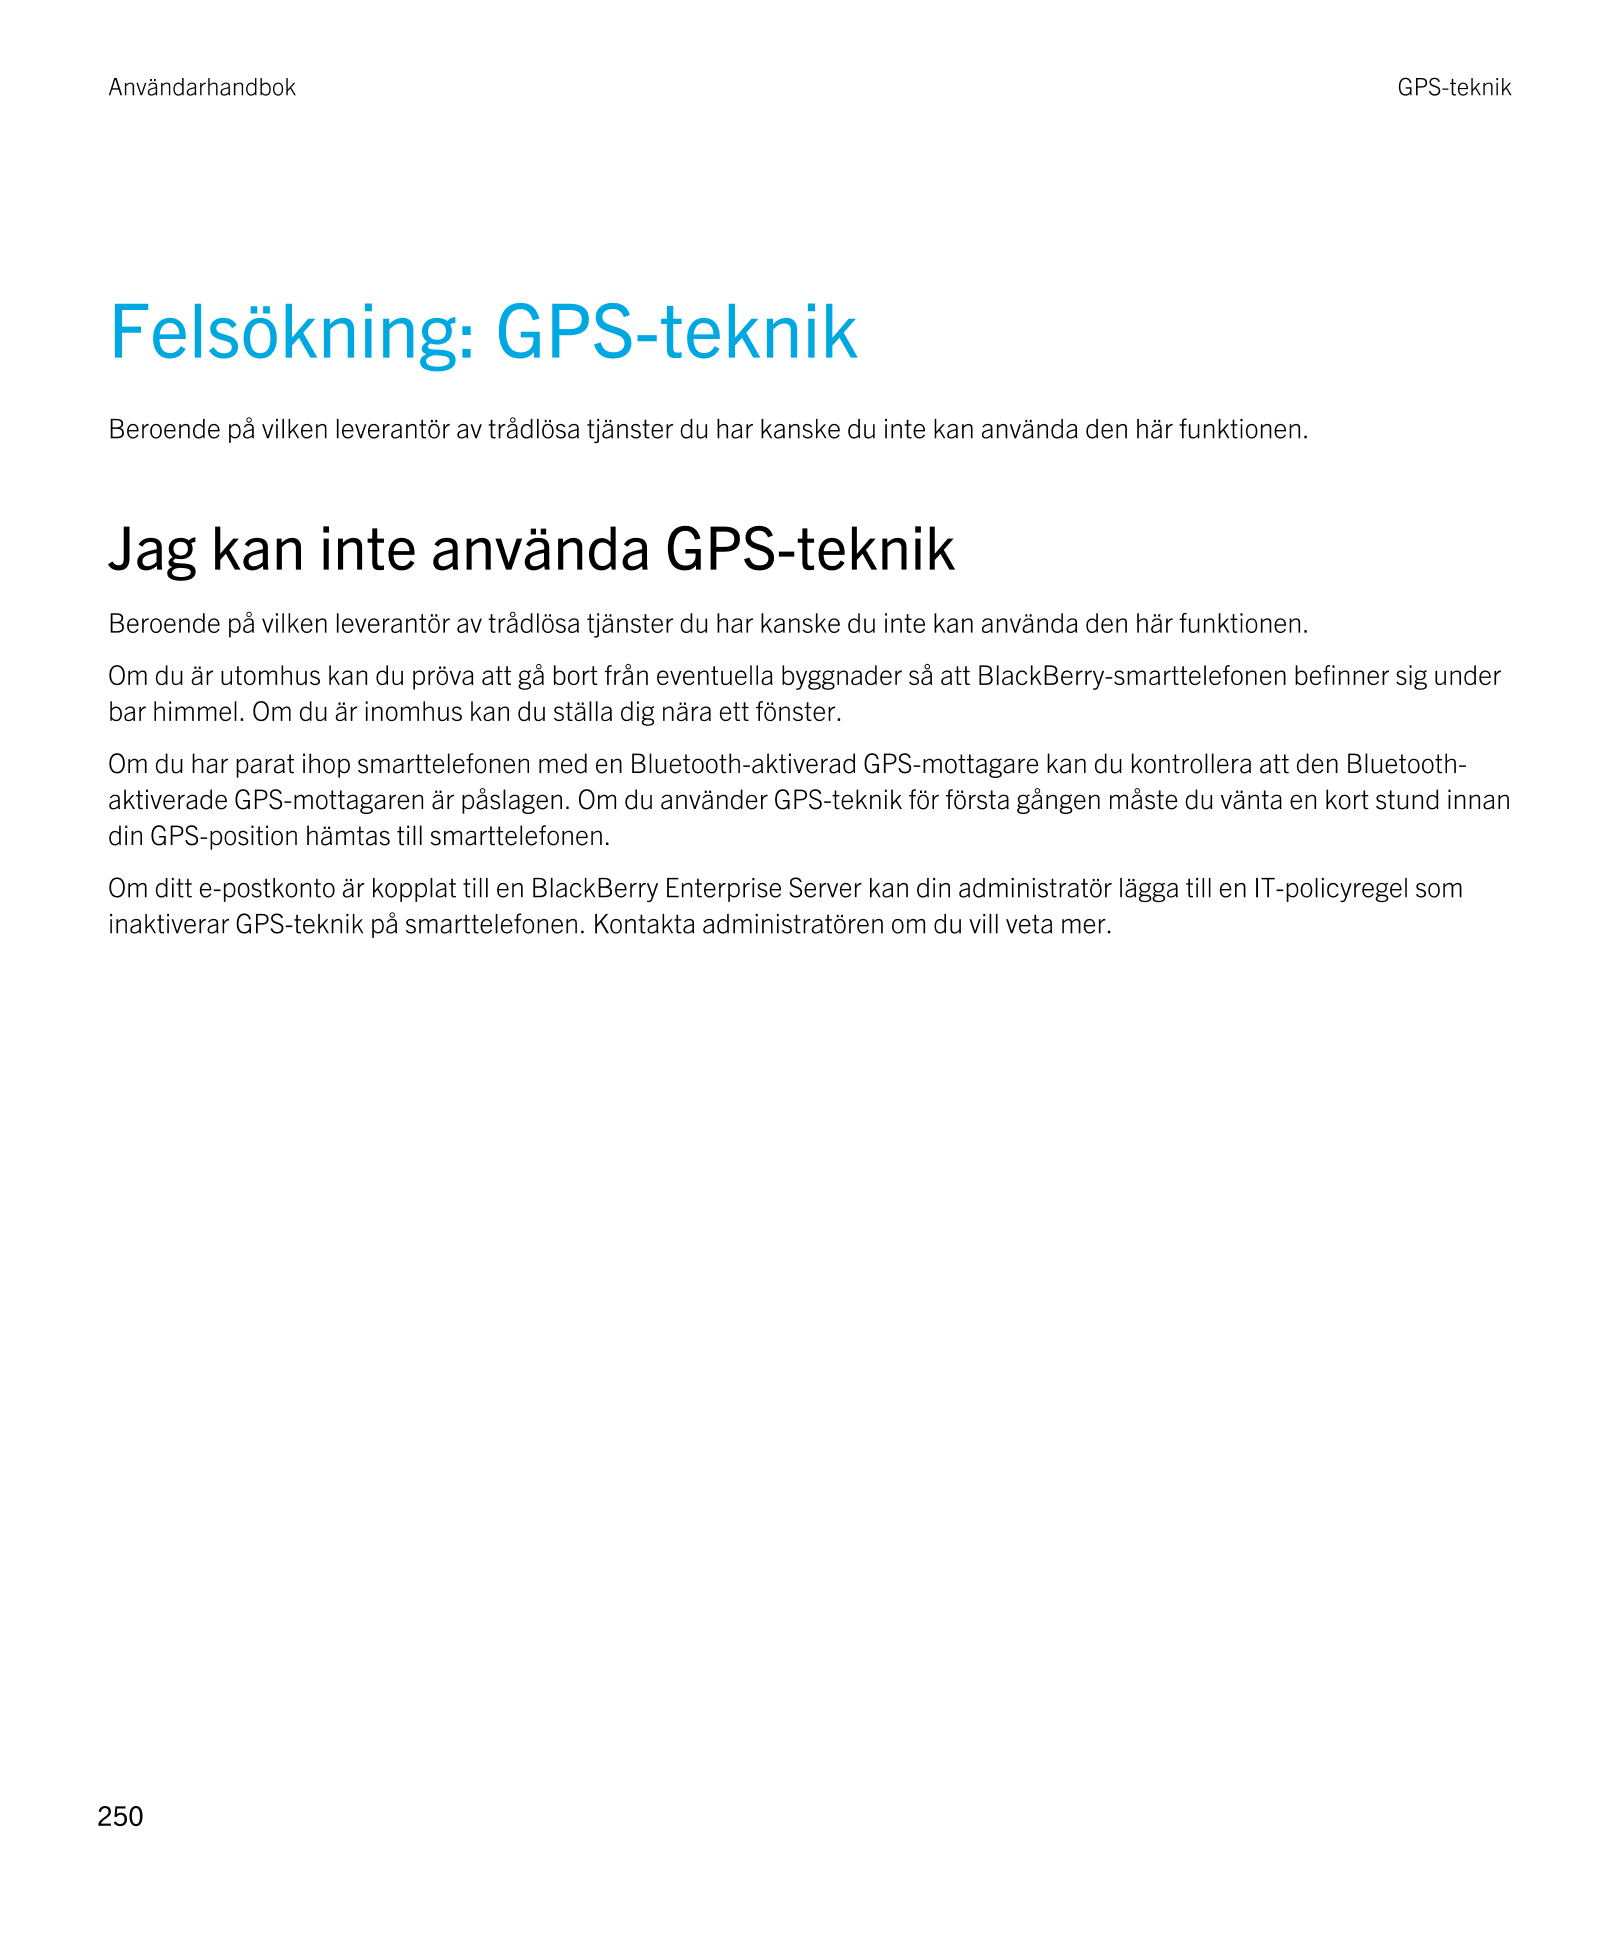 Användarhandbok GPS-teknik
Felsökning: GPS-teknik
Beroende på vilken leverantör av trådlösa tjänster du har kanske du inte kan a